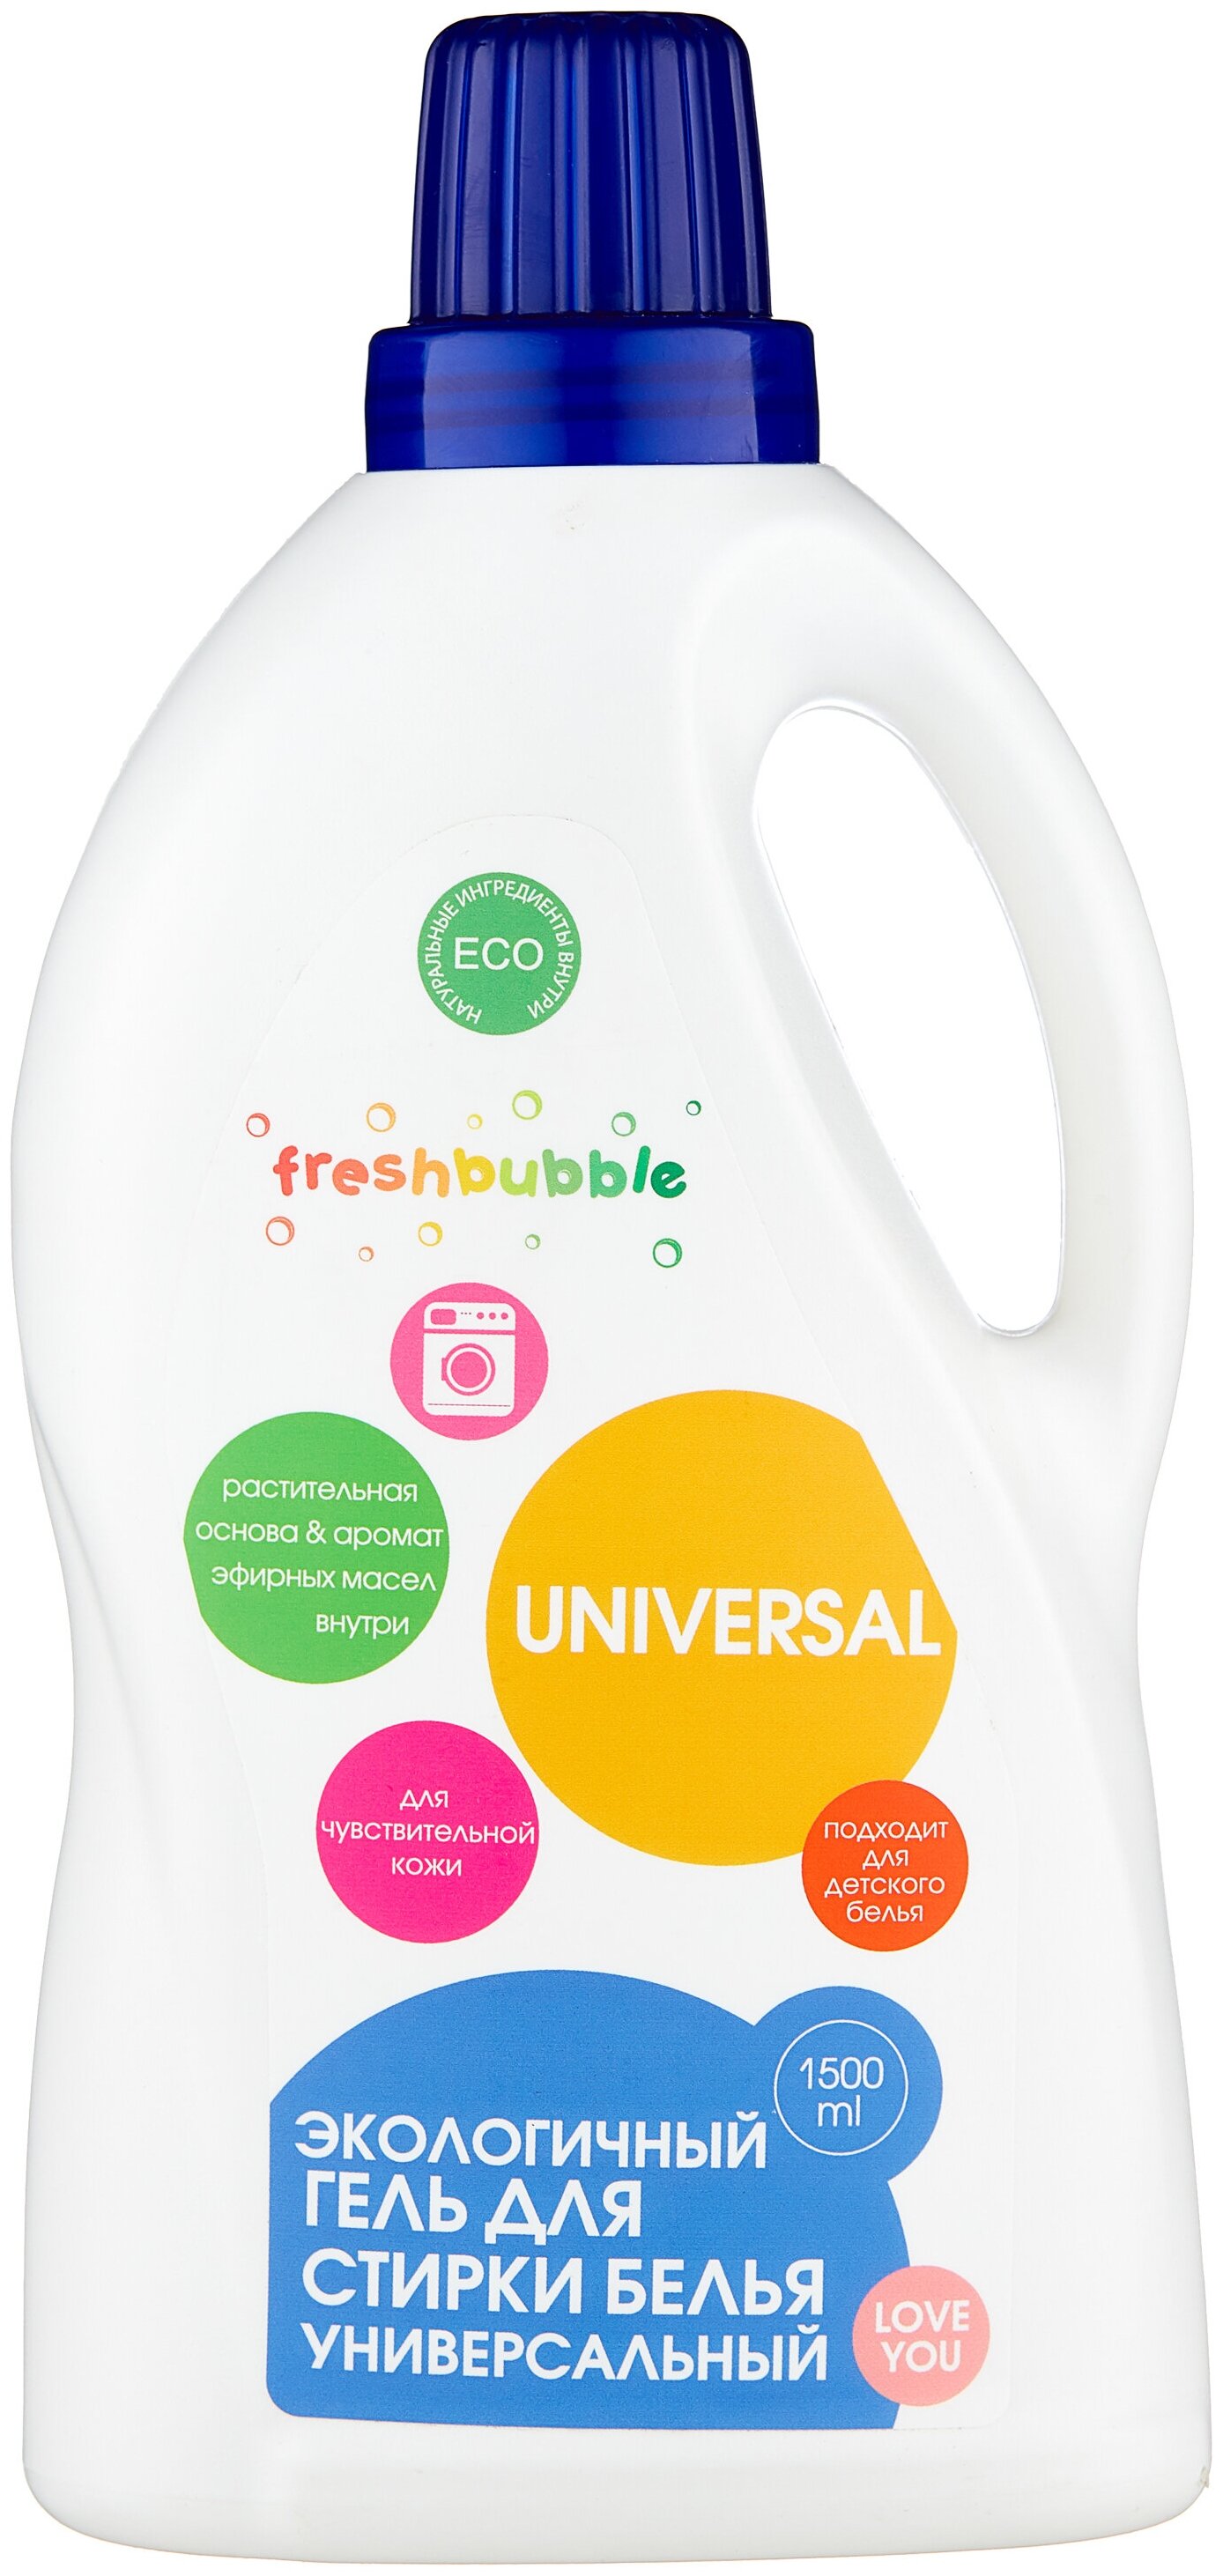 Freshbubble "Универсальный" - для детского белья